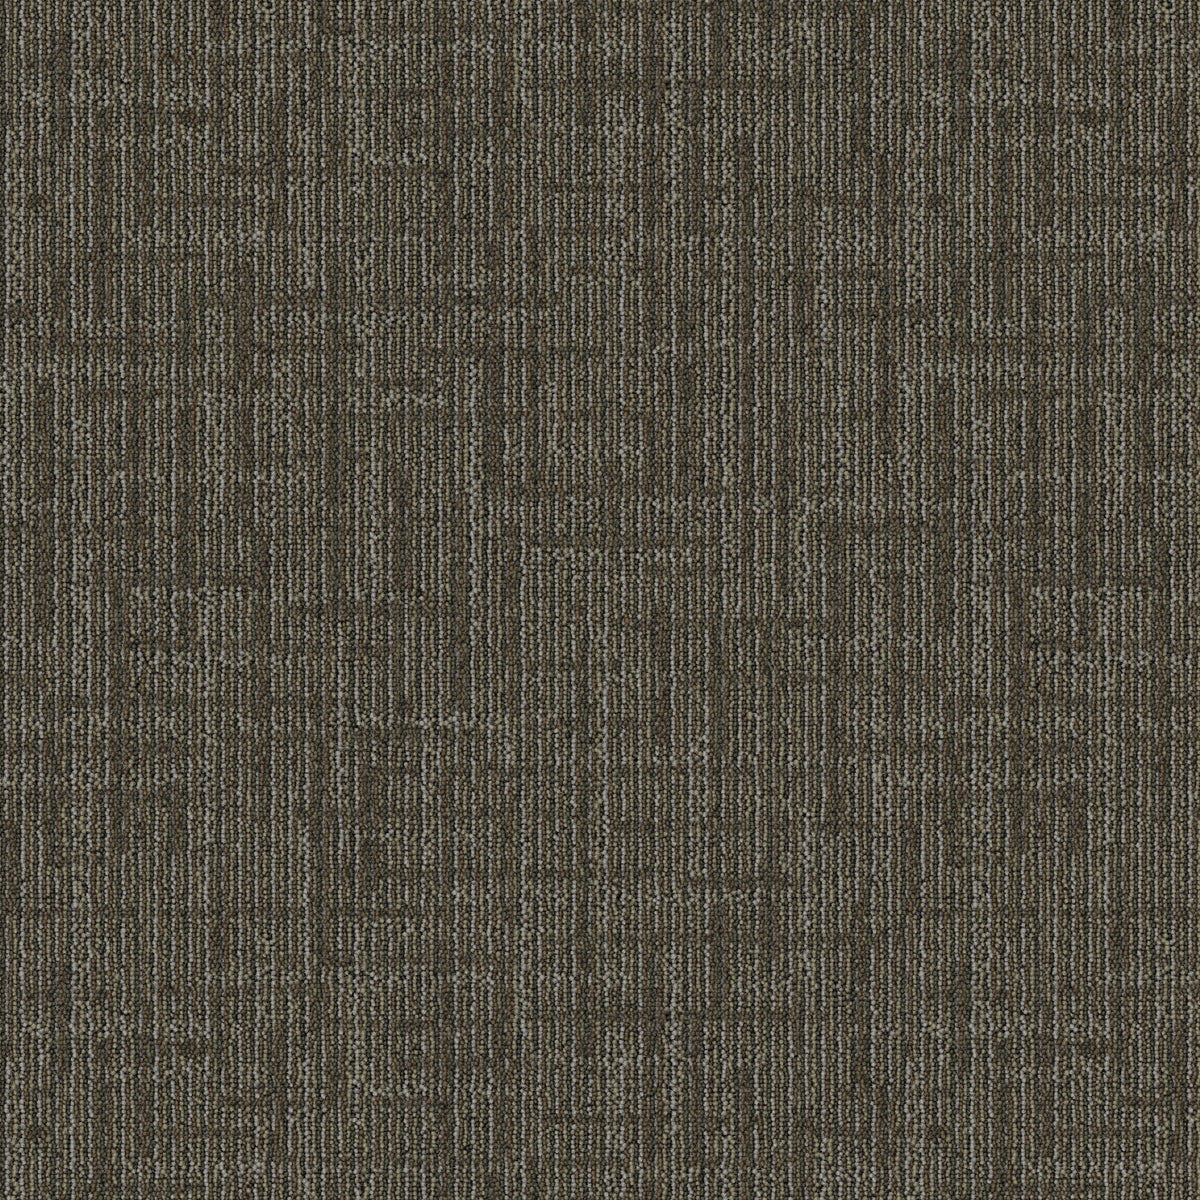 Mohawk Group - Bending Earth - Lateral Surface - Carpet Tile - Chert